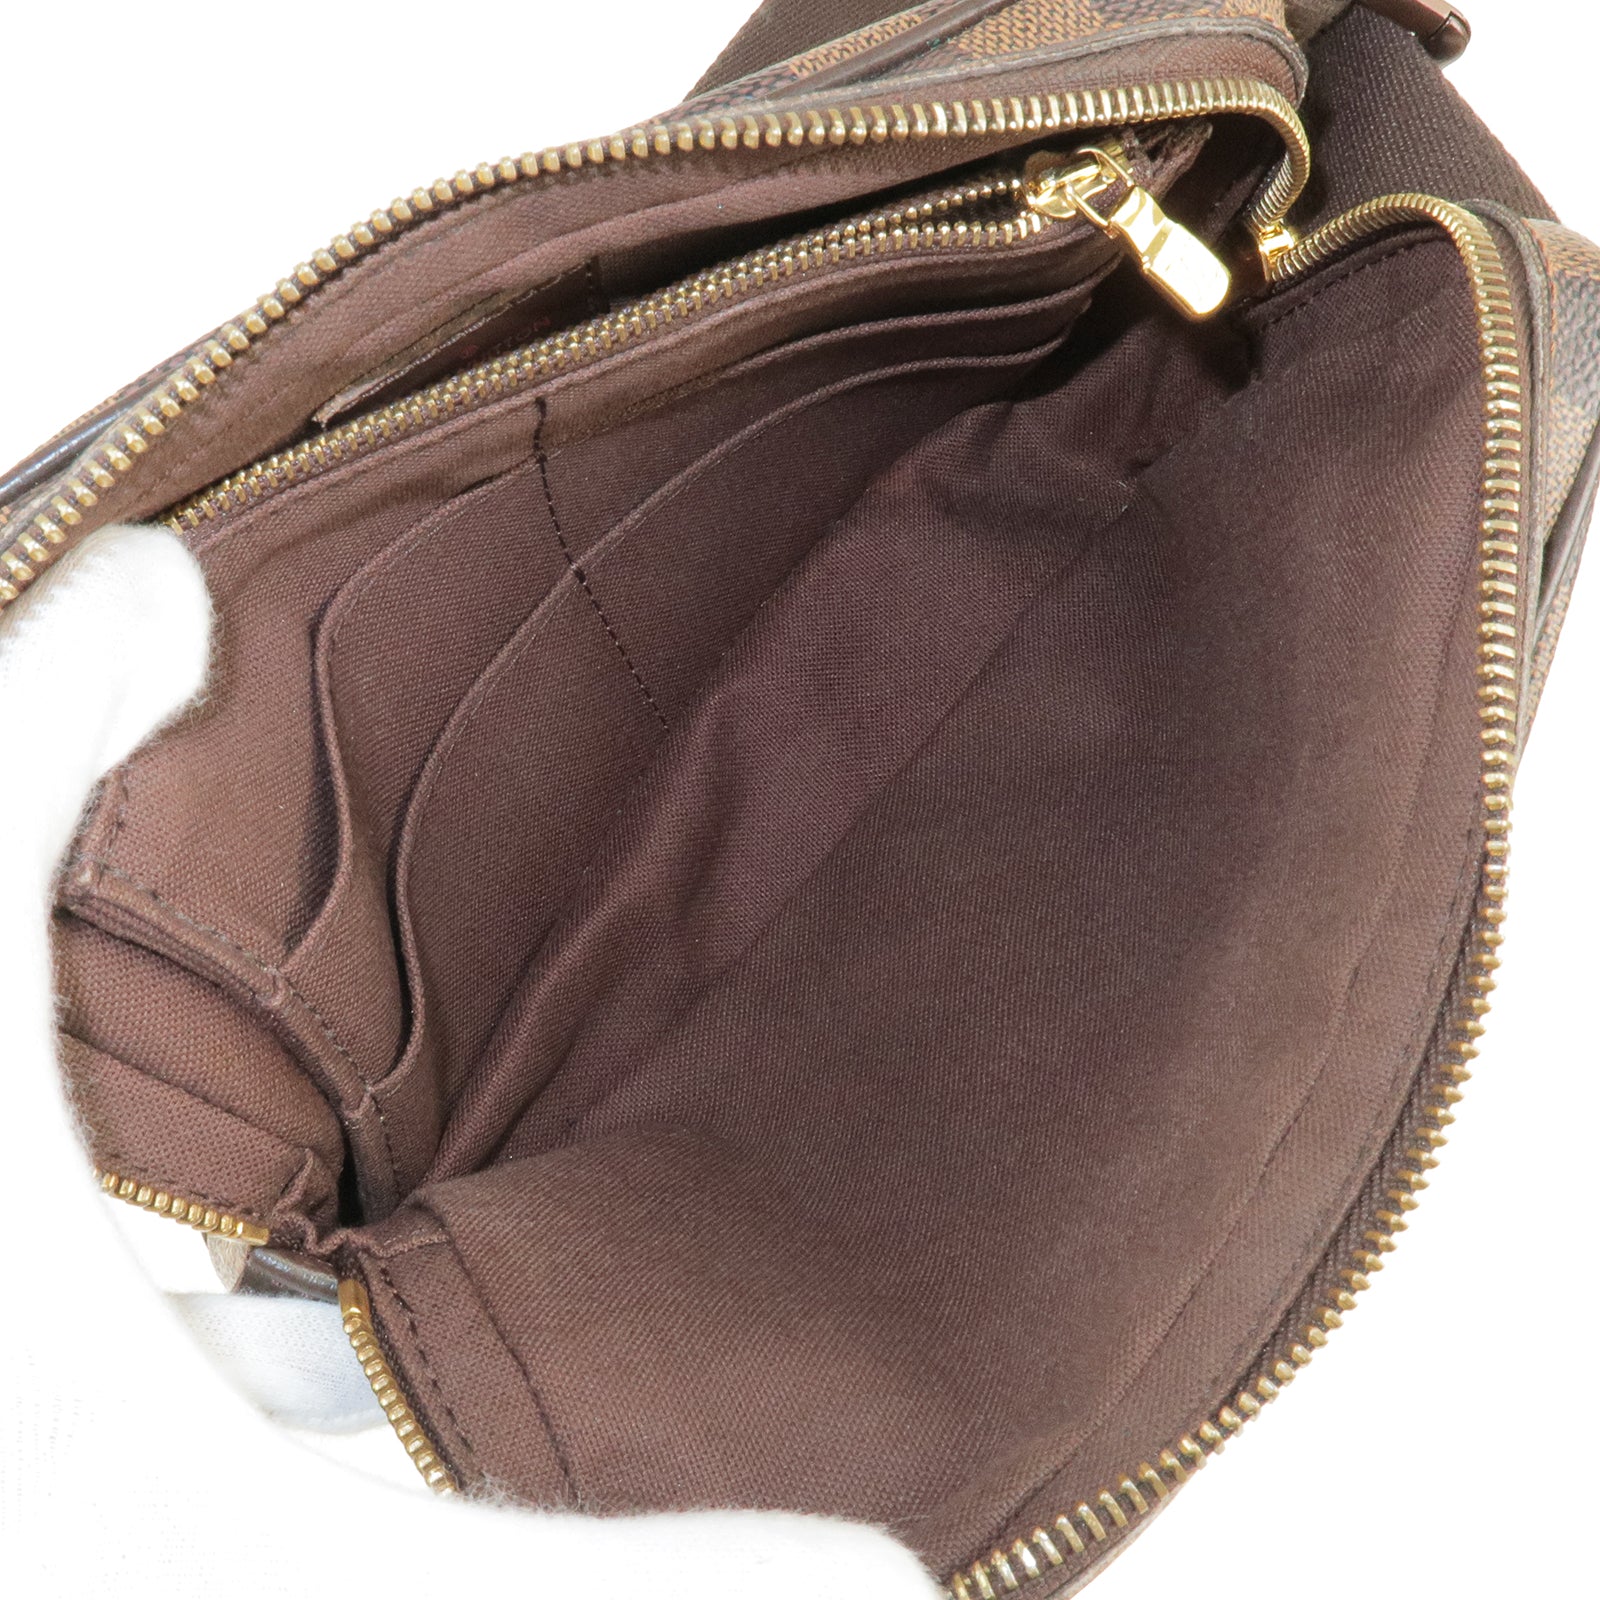 Vuitton - Damier - N41101 – dct - Bag - Bag - Bum - Waist